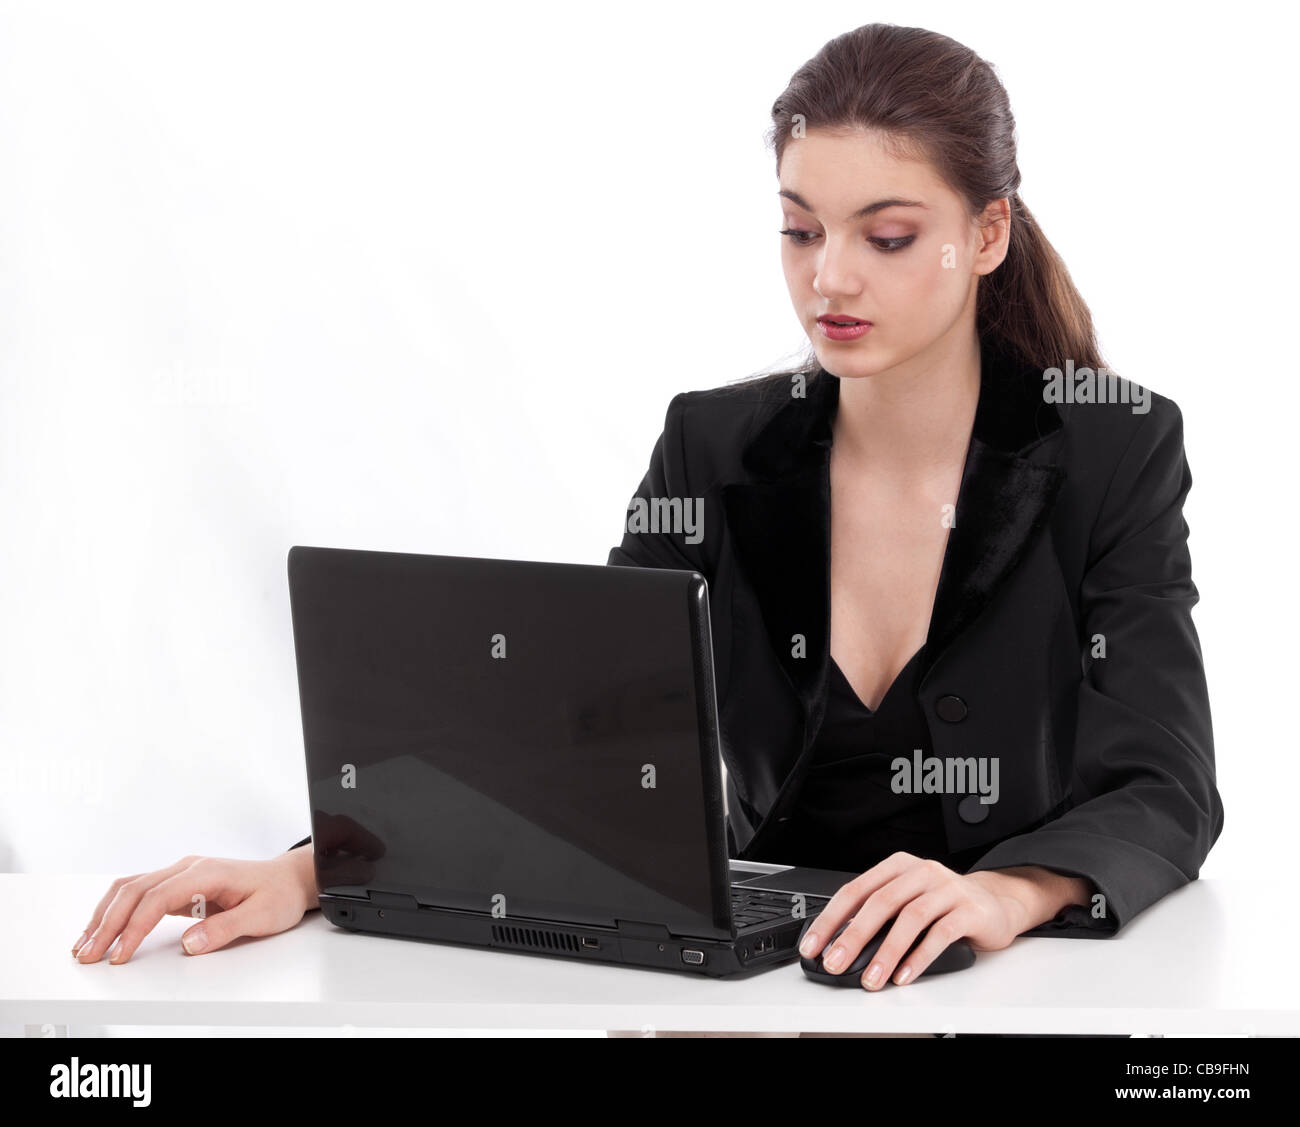 Ragazza che lavora con il computer portatile. Immagine su sfondo bianco. Foto Stock